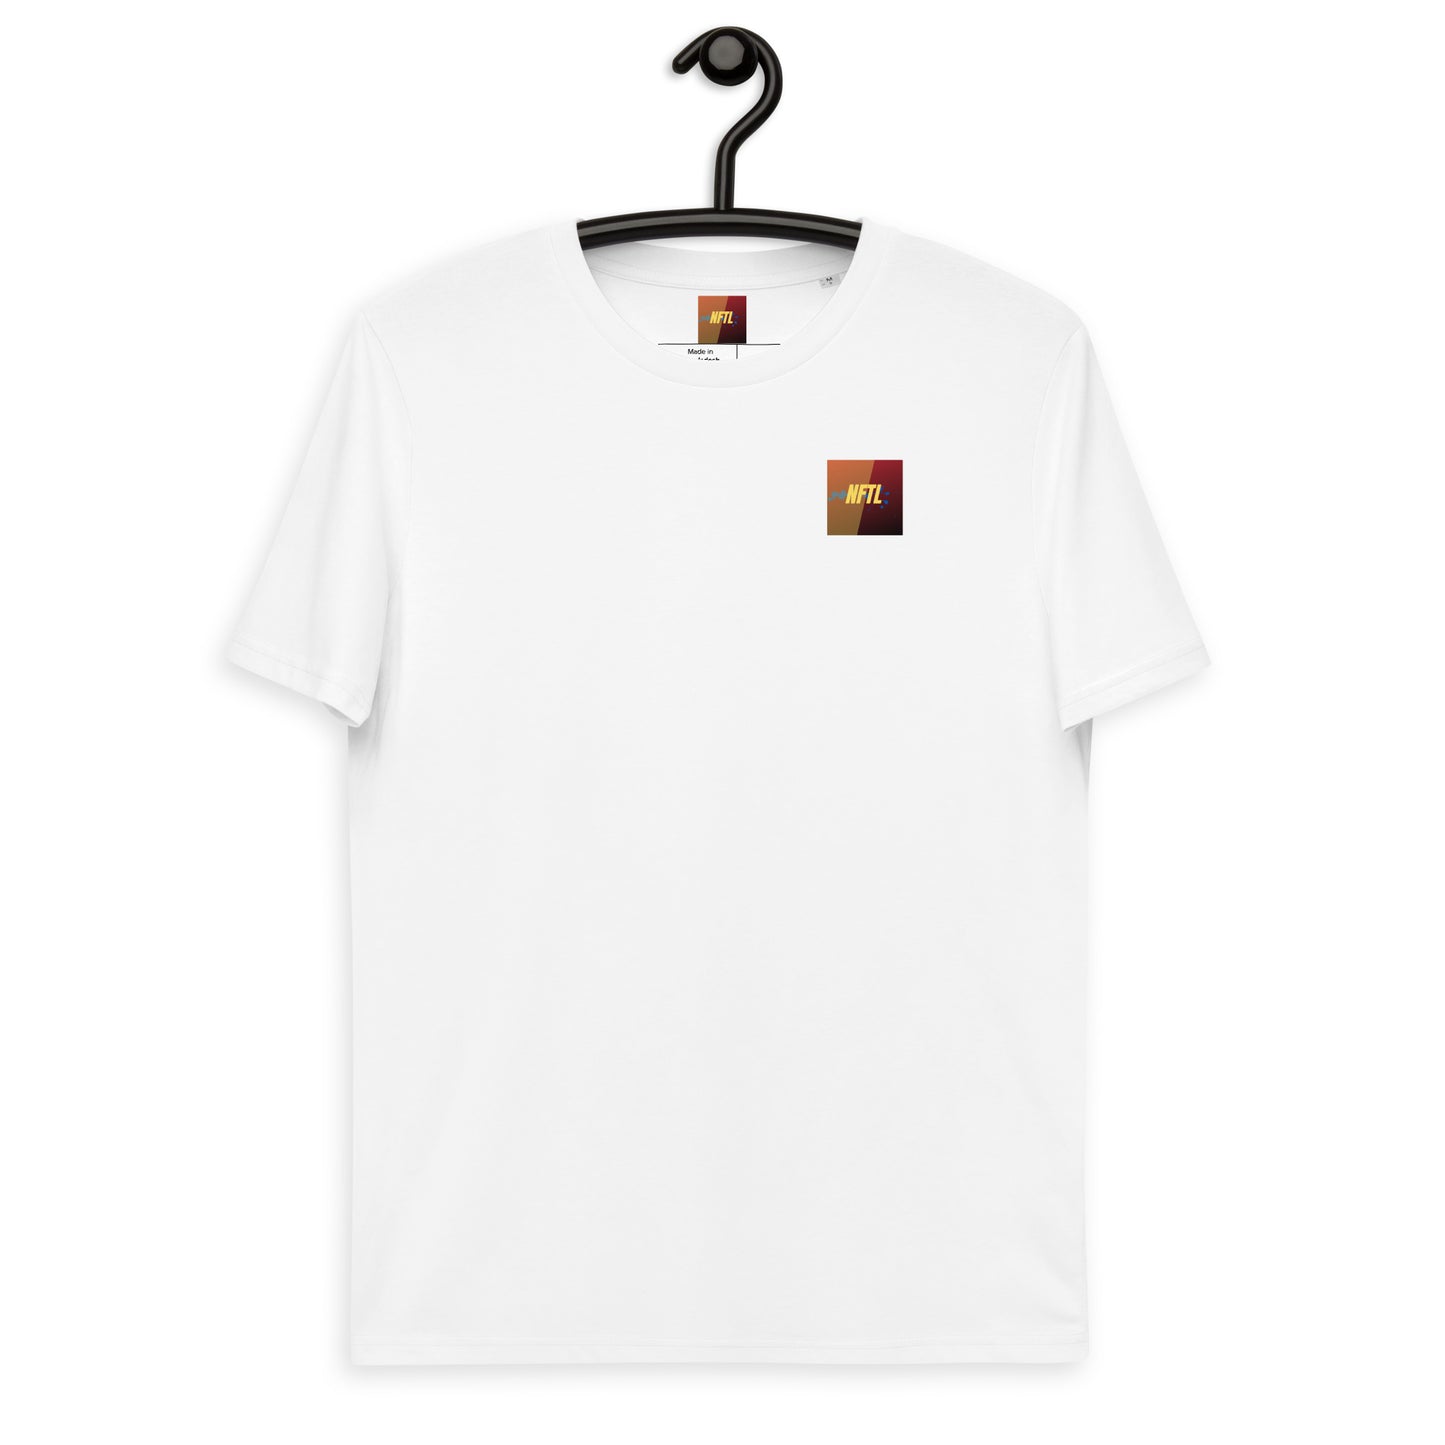 Unisex $NFTL cotton t-shirt